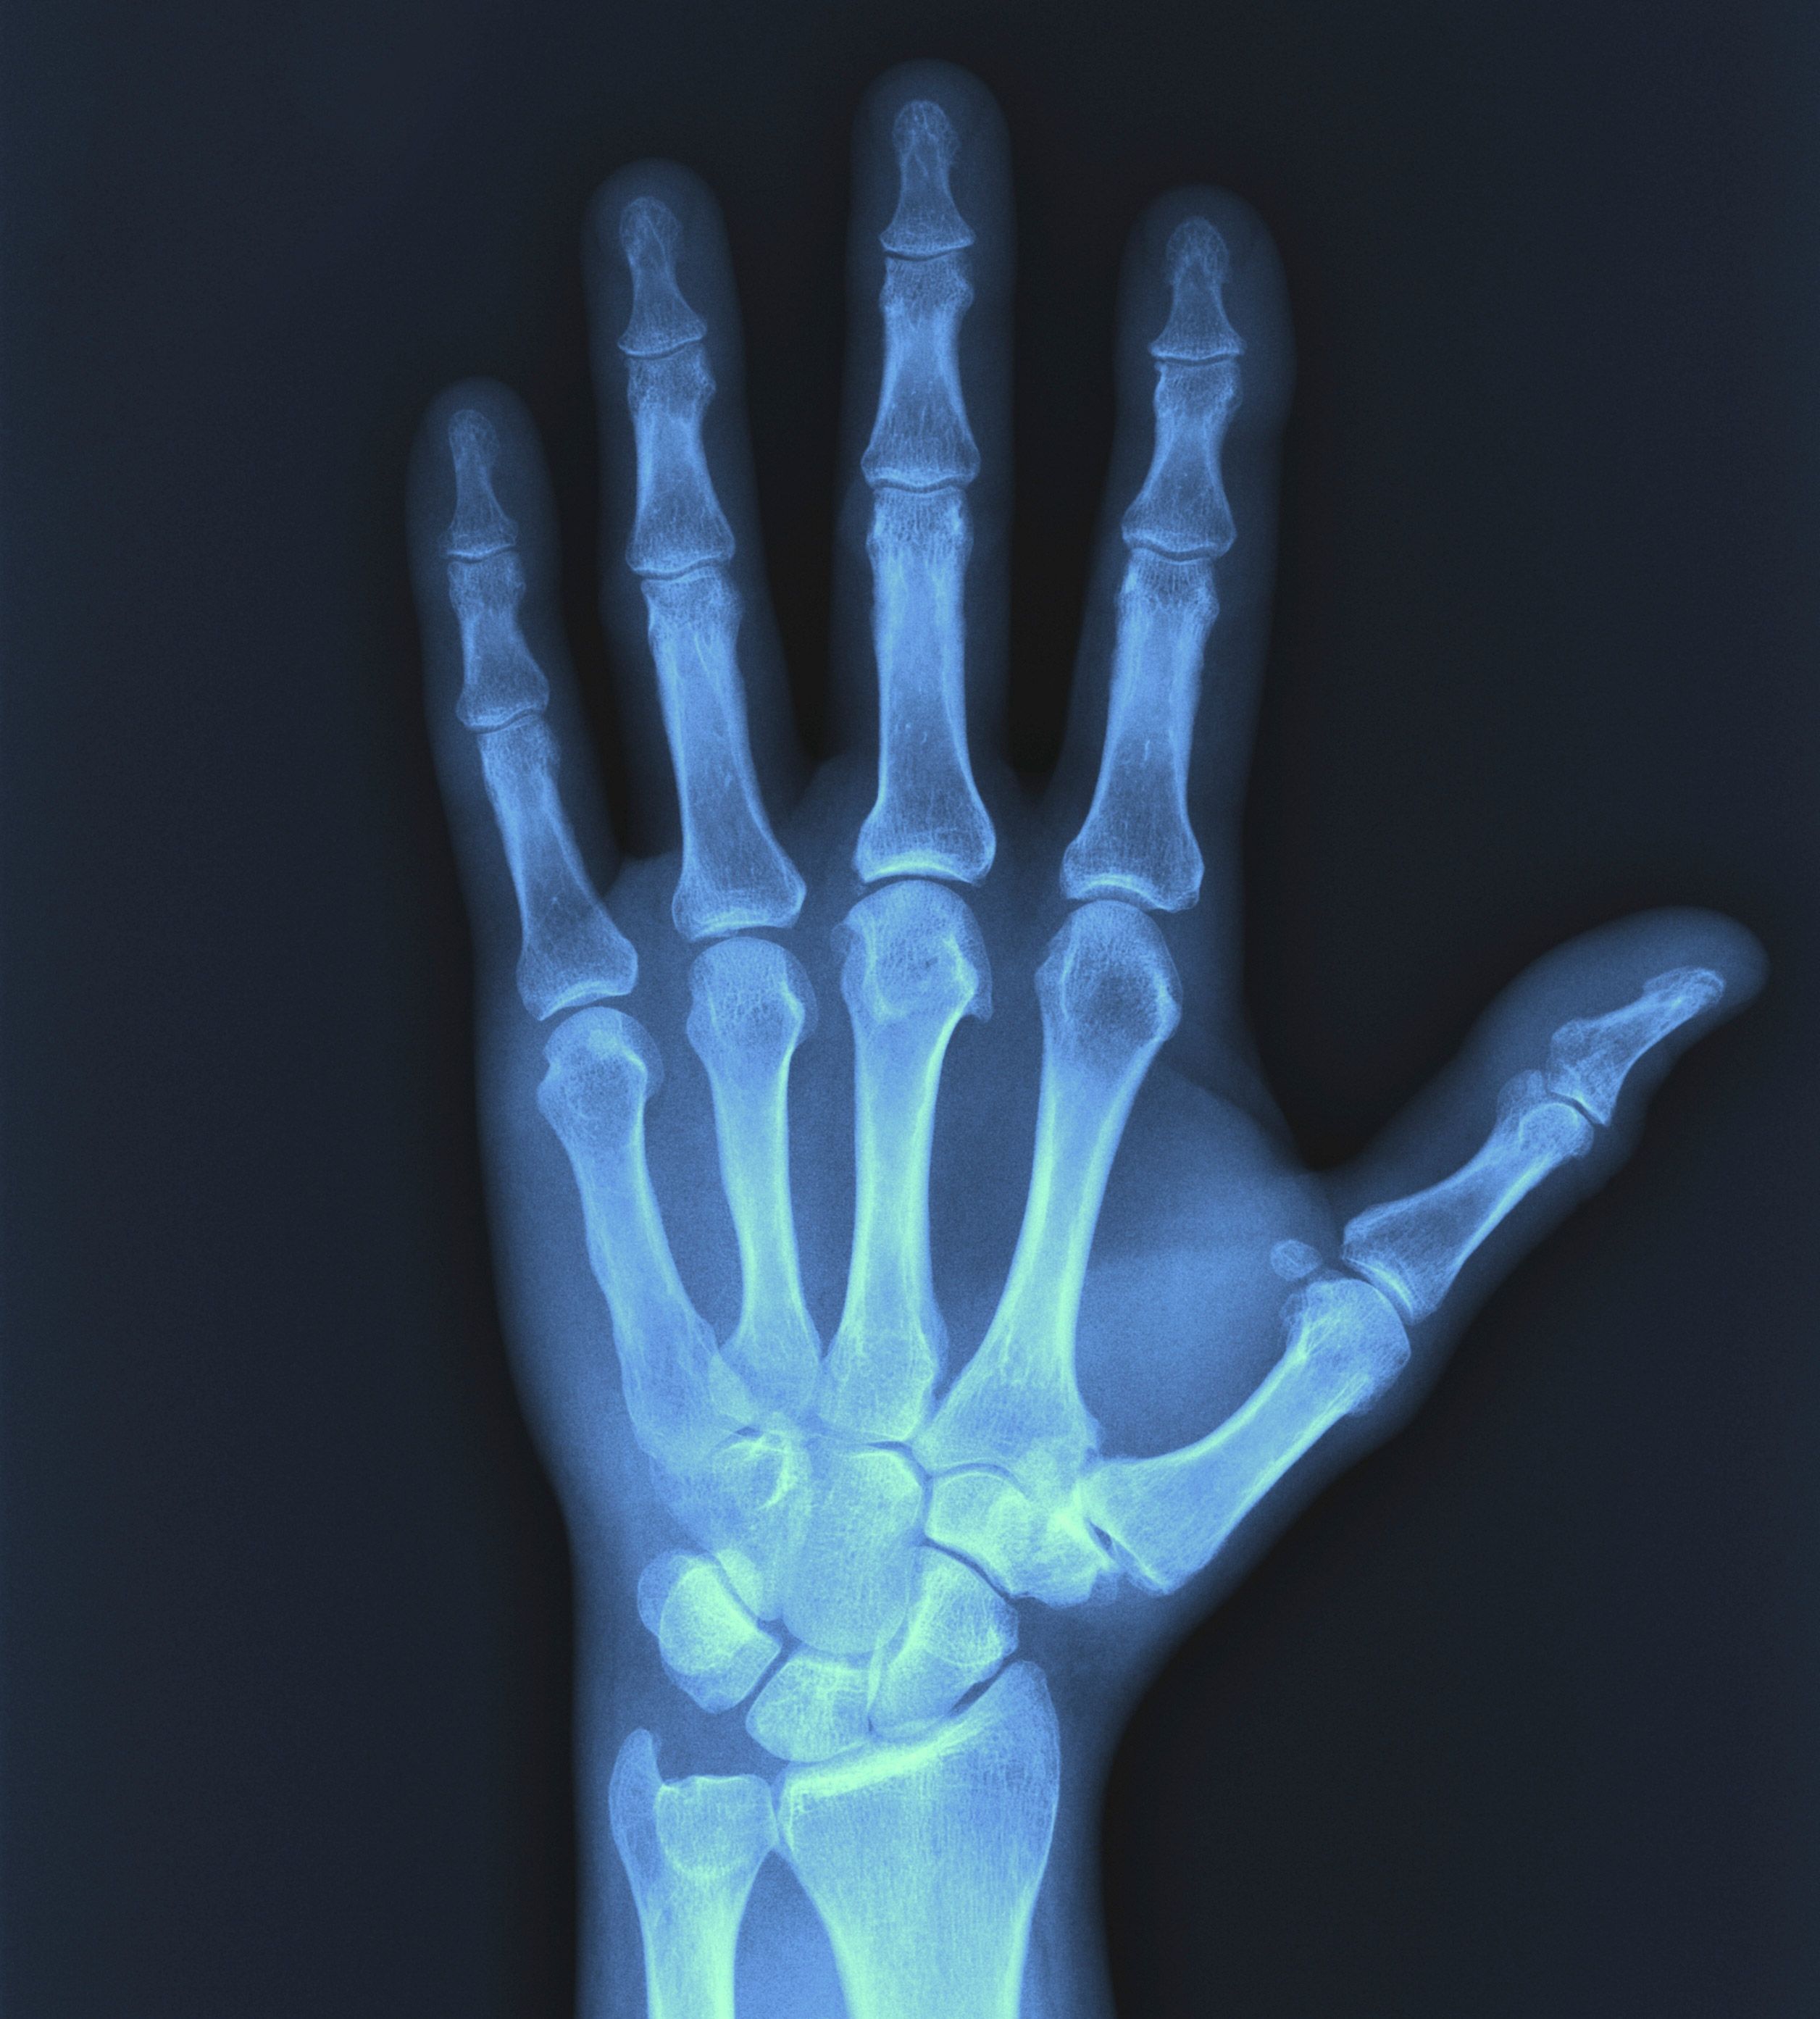 عکس استوک رادیولوژی دست انسان با جزئیات چشمگیر